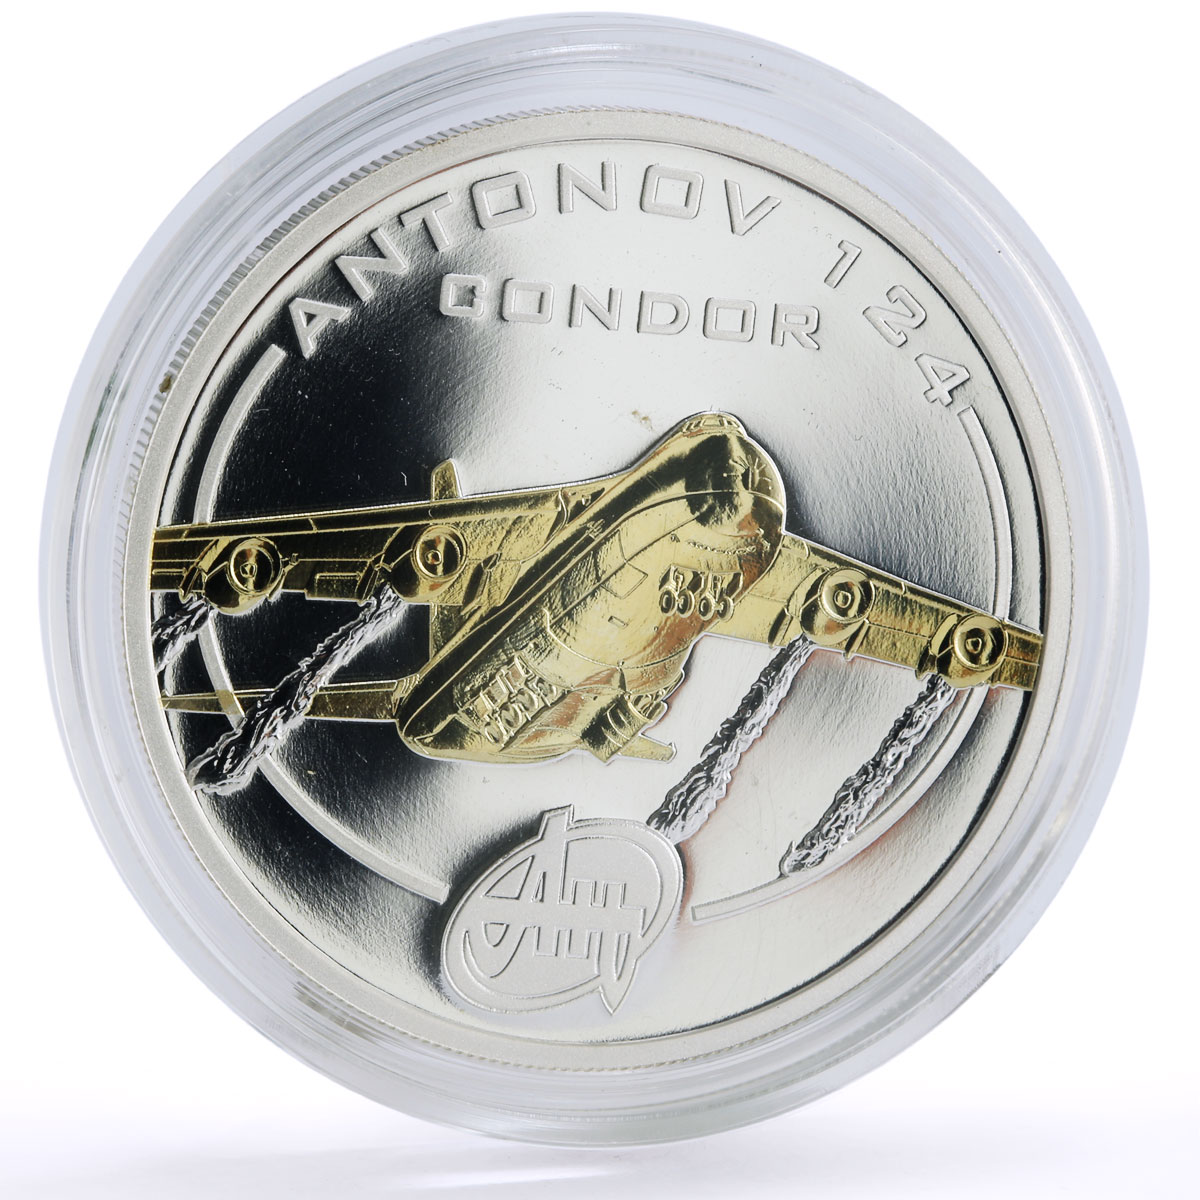 Cook Islands 1 $ Antonov Ukraine Planes AN-124 Condor gilded silver coin 2008